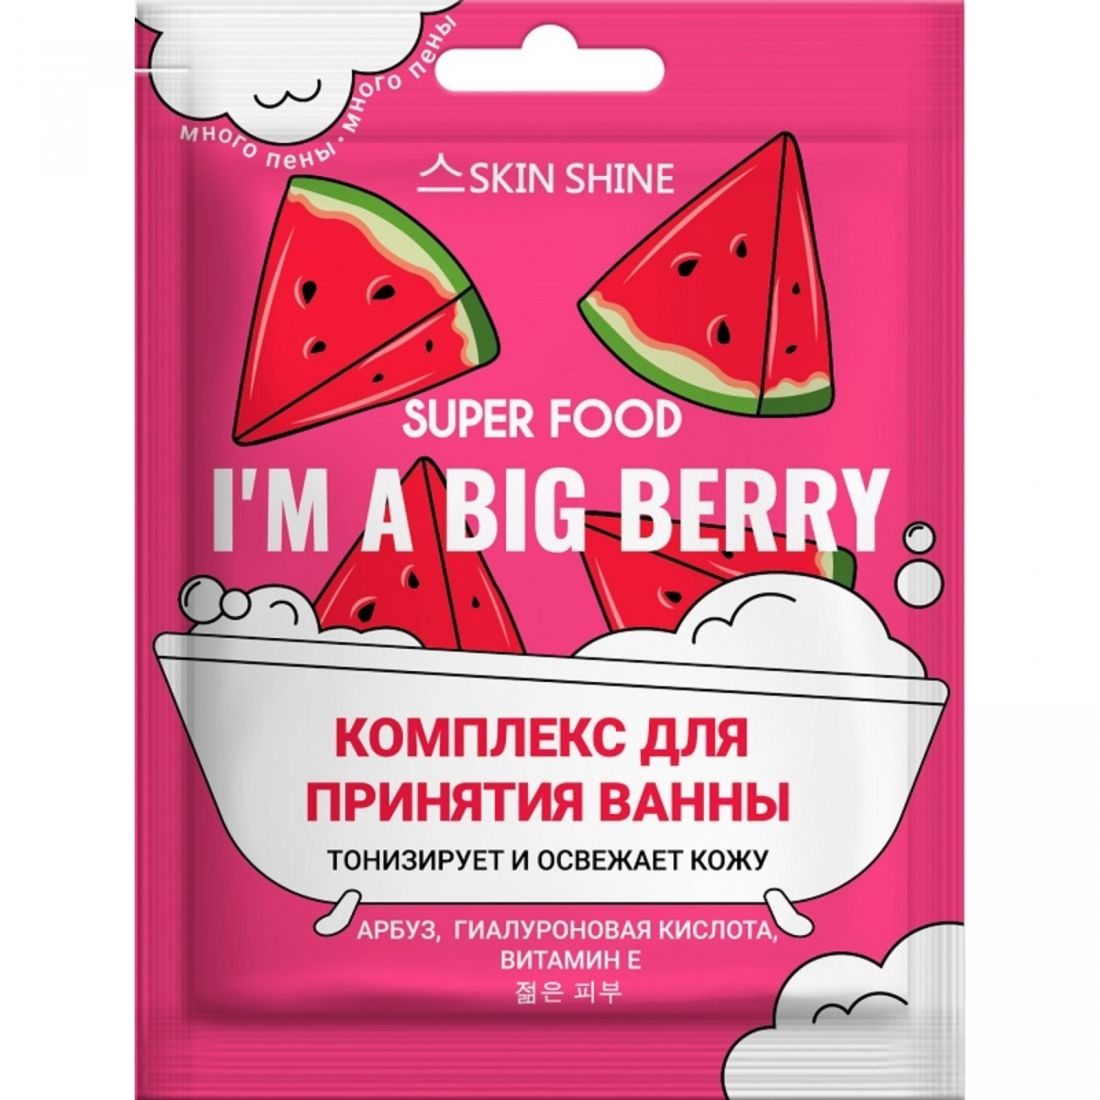 Комплекс SKIN SHINE SUPER FOOD "I'M A BIG BERRY" для принятия ванны АРБУЗ 75 мл (12076)